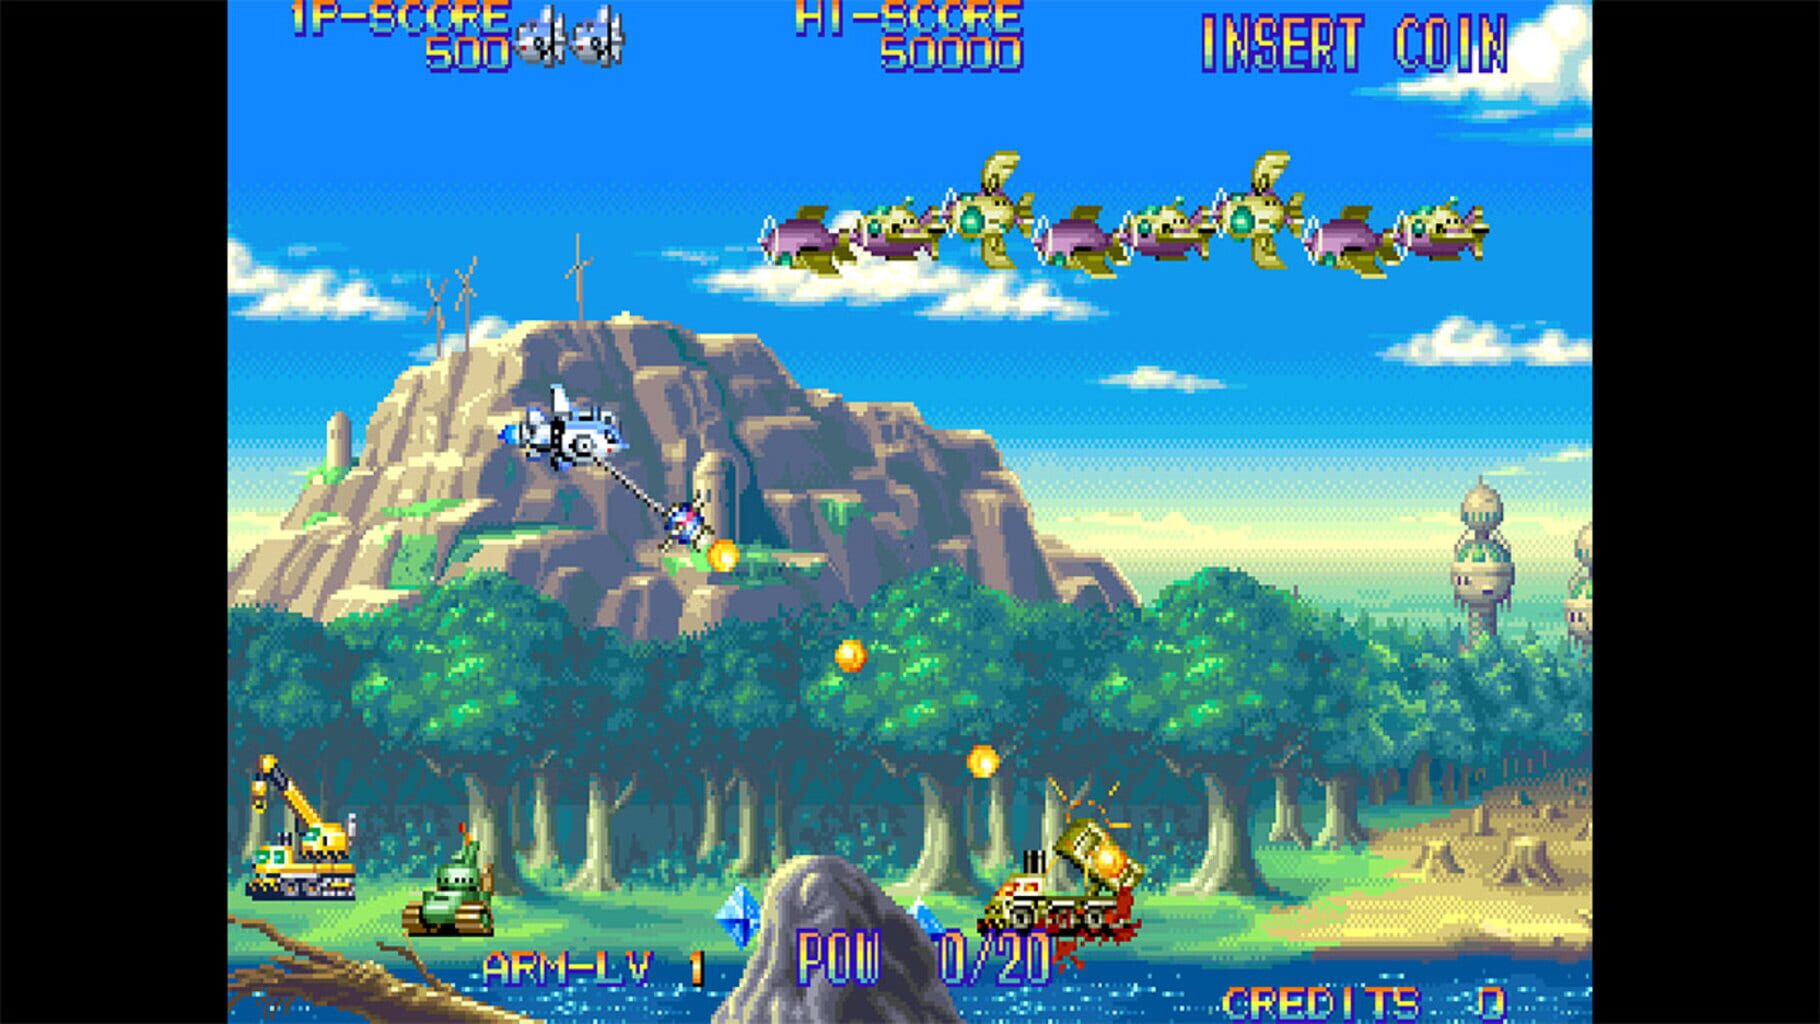 Capcom Arcade 2nd Stadium: Eco Fighters screenshot